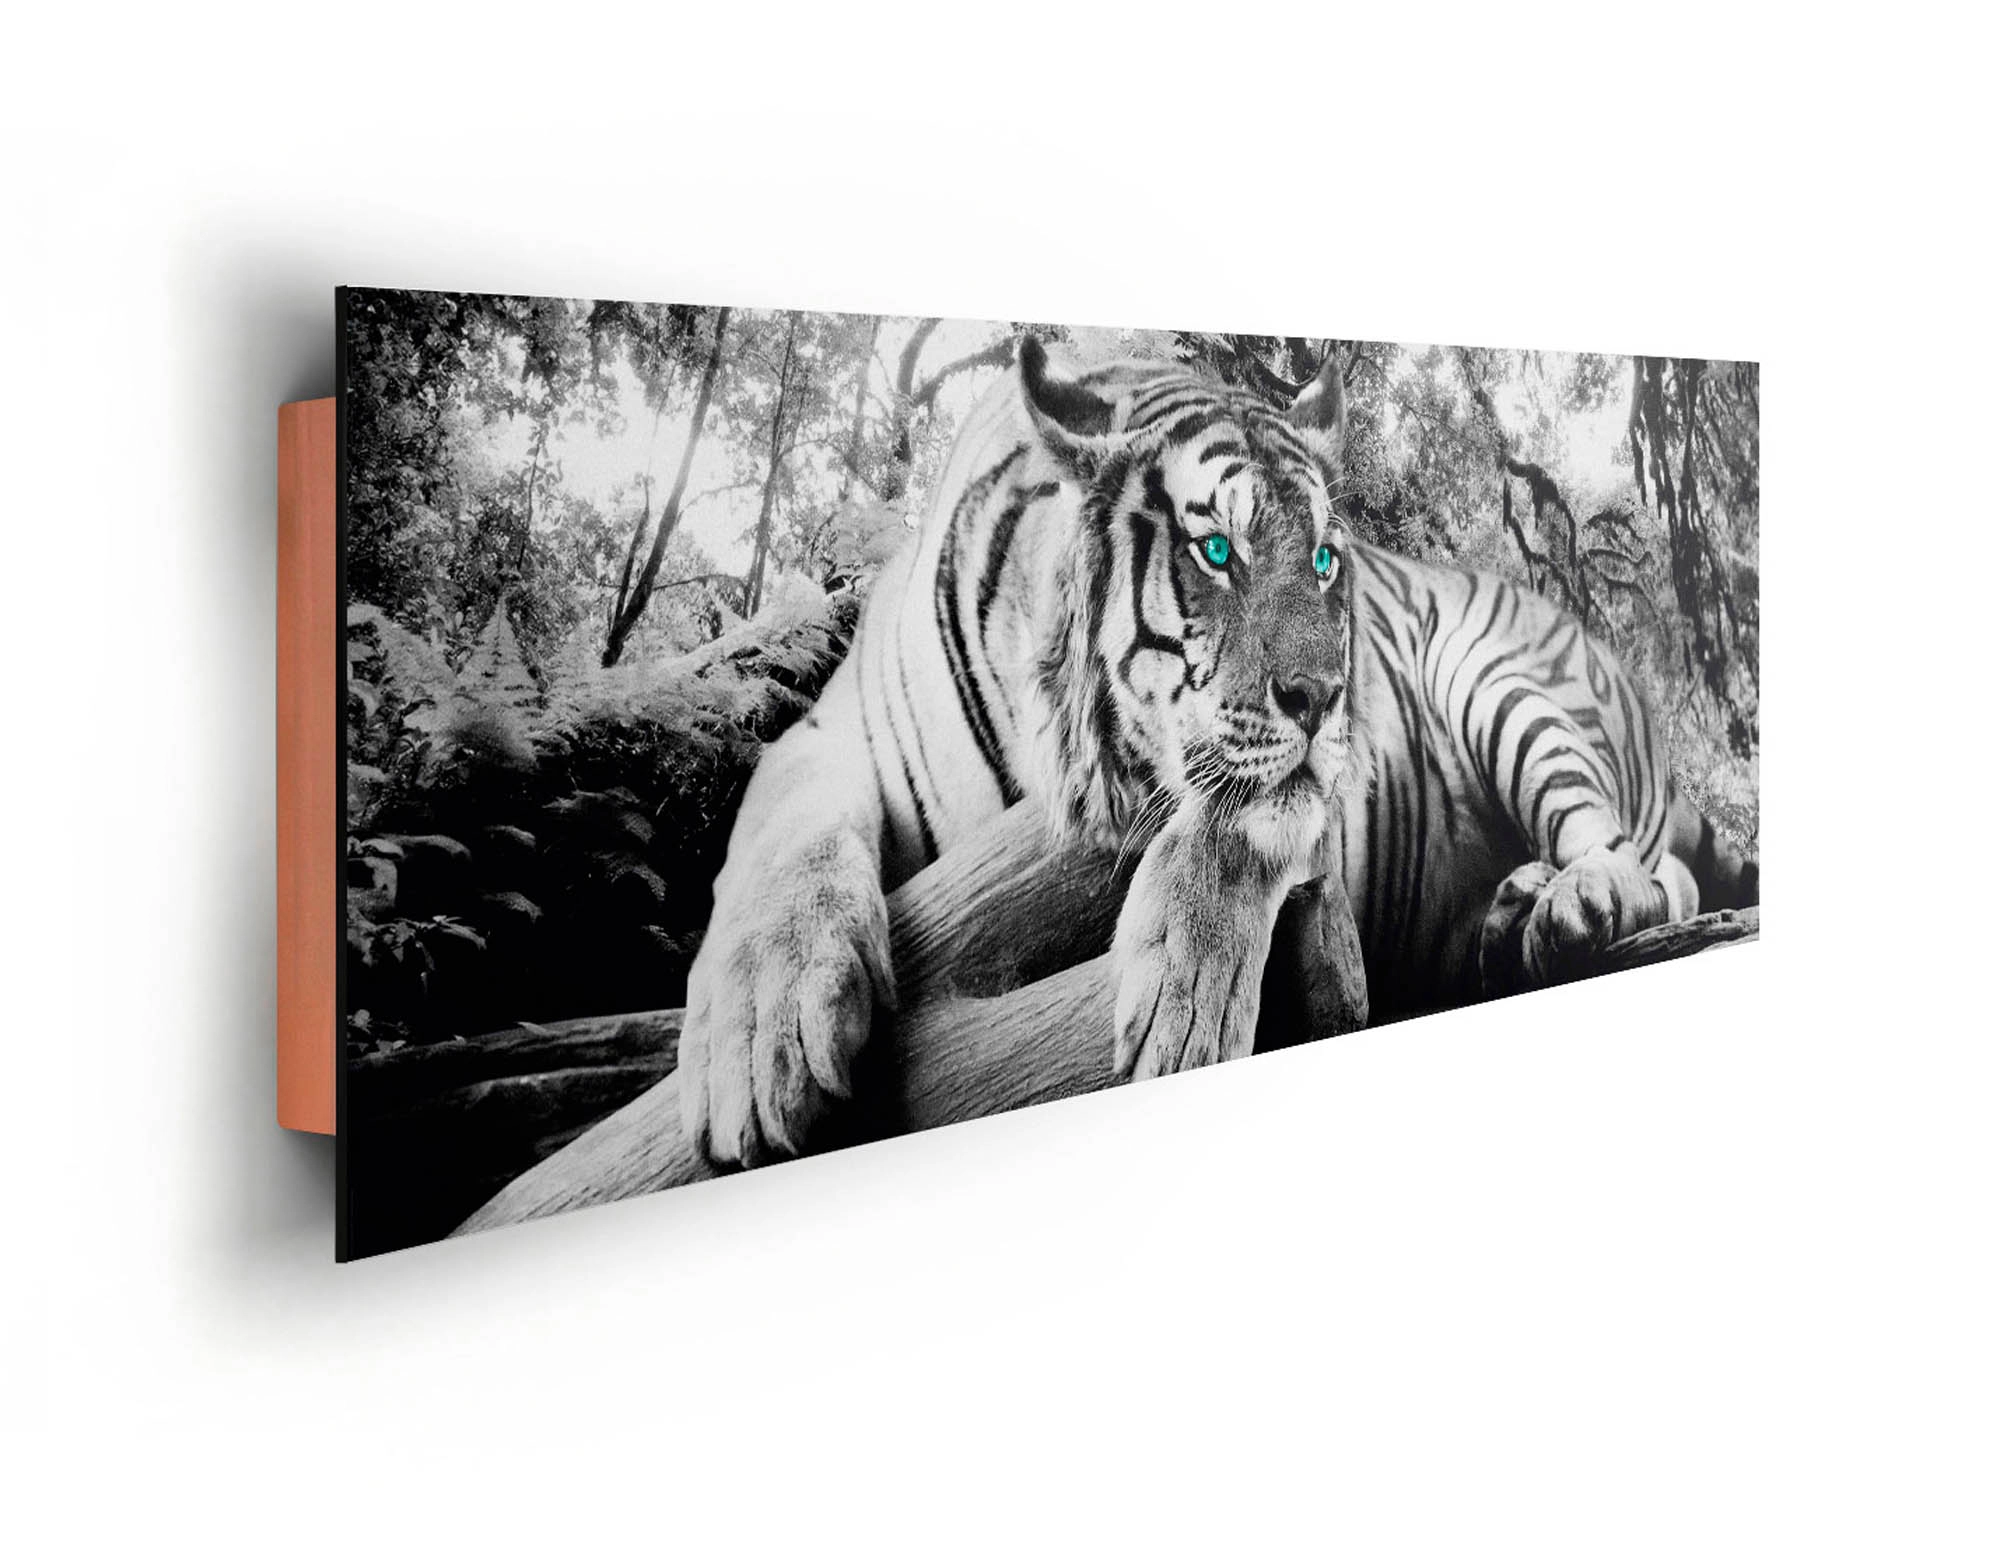 Wandbild Tiger guckt dich bei x an 156 OBI 52 cm cm kaufen